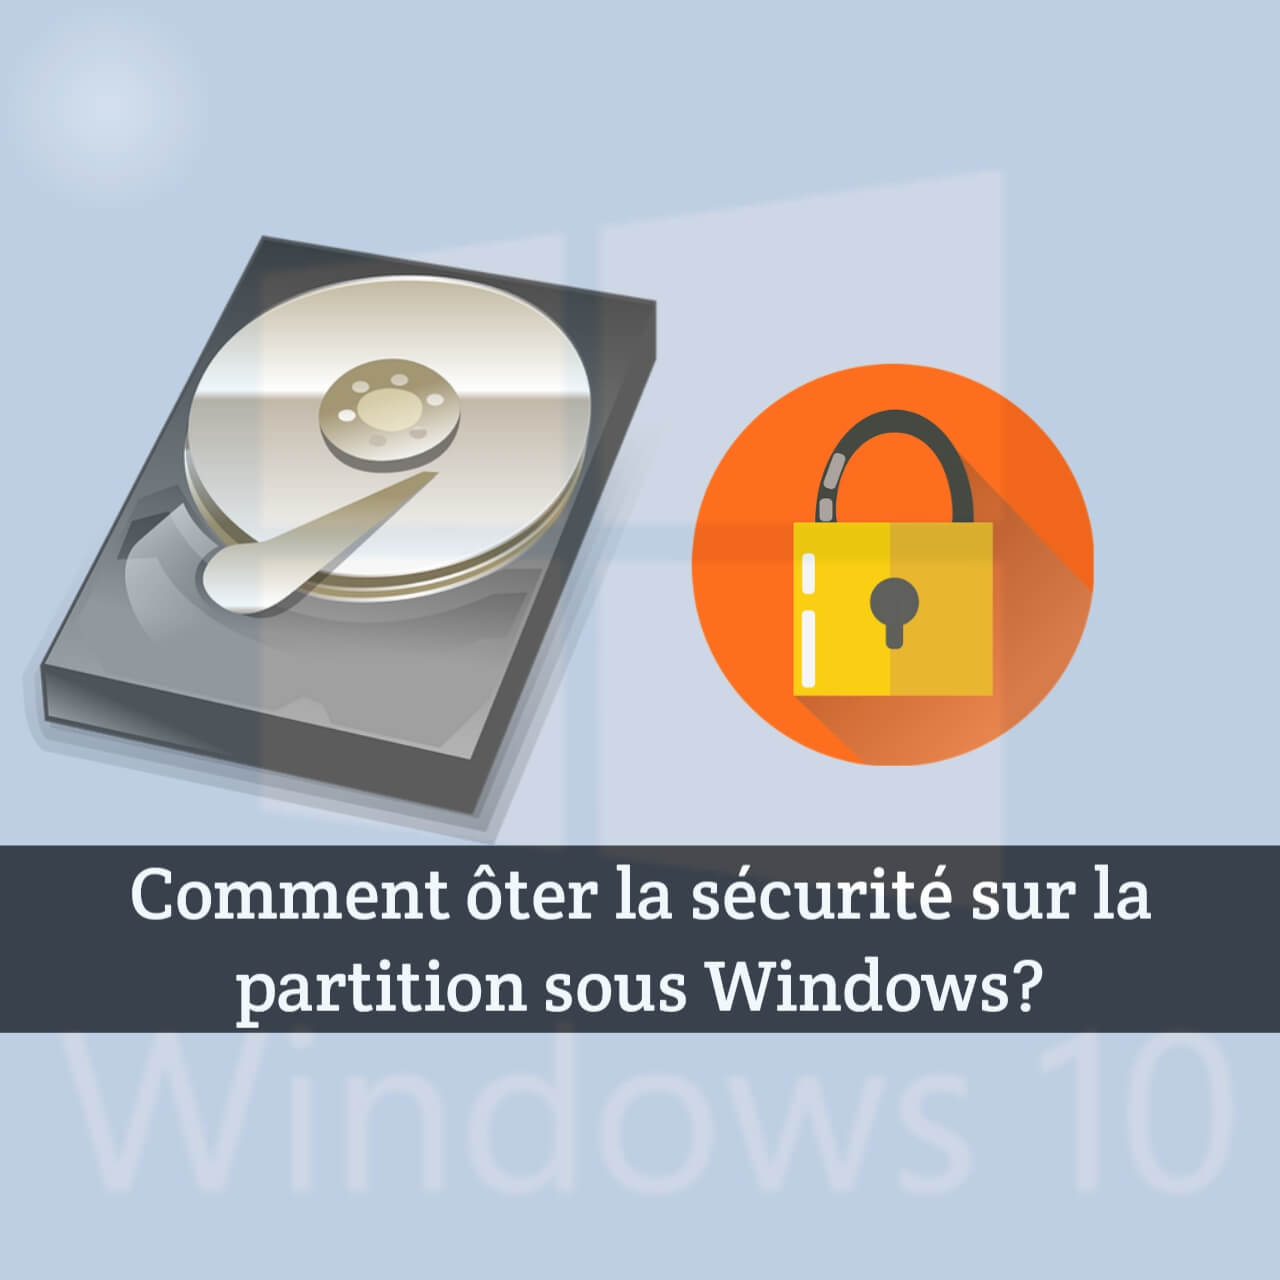 Comment ôter la sécurité sur la partition sous Windows ?